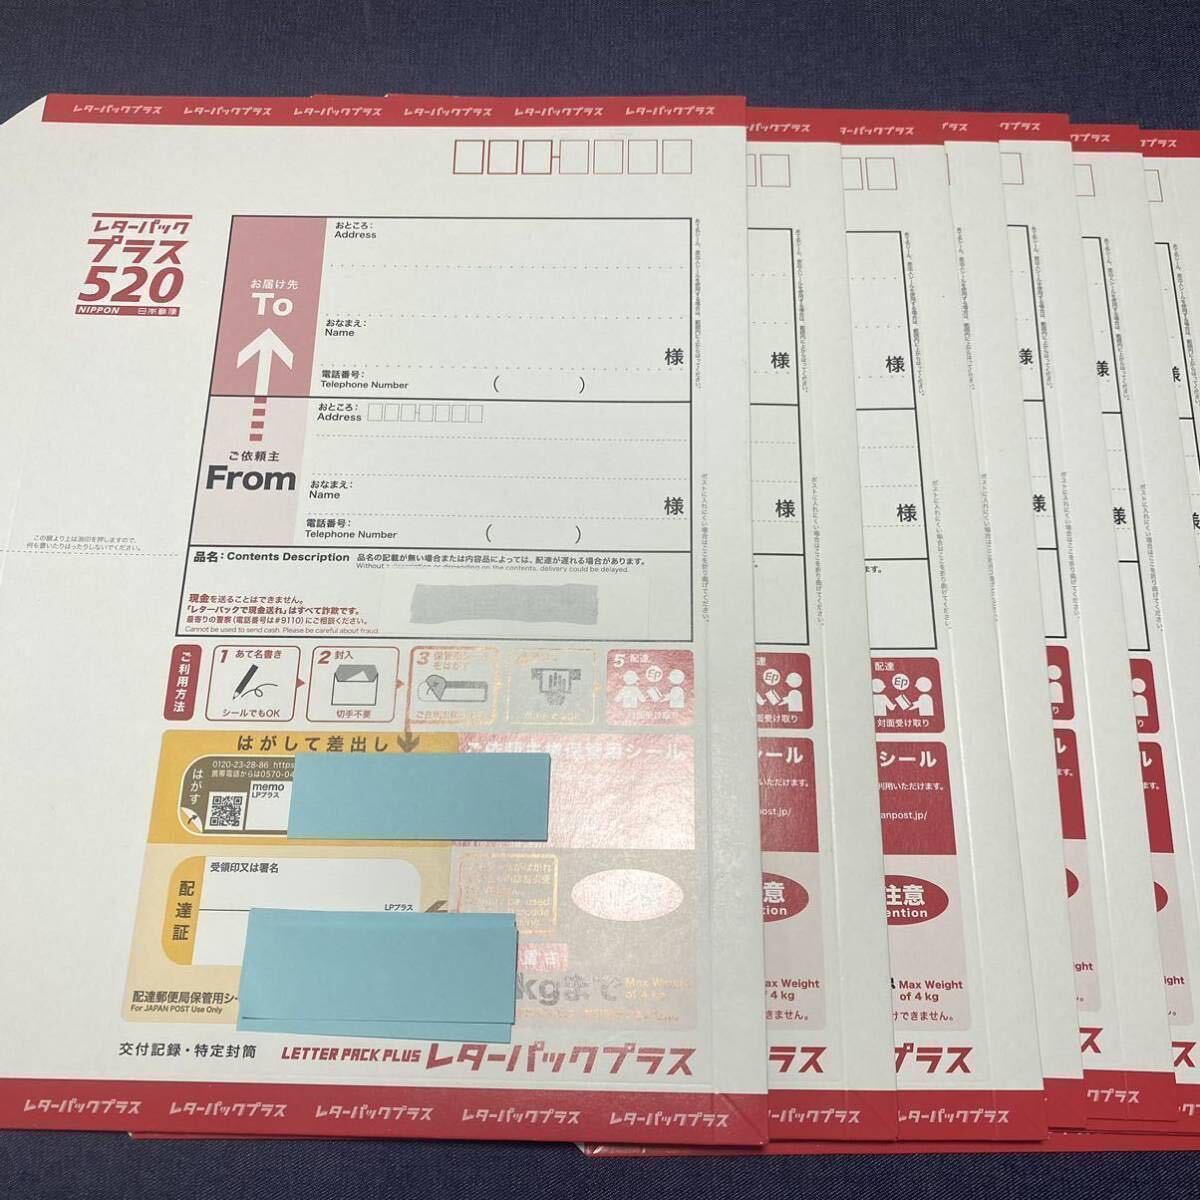 ◆ Бесплатная доставка ◆ Письмовая упаковка плюс ① 40 листов 20800 иен (поставляется без складки)